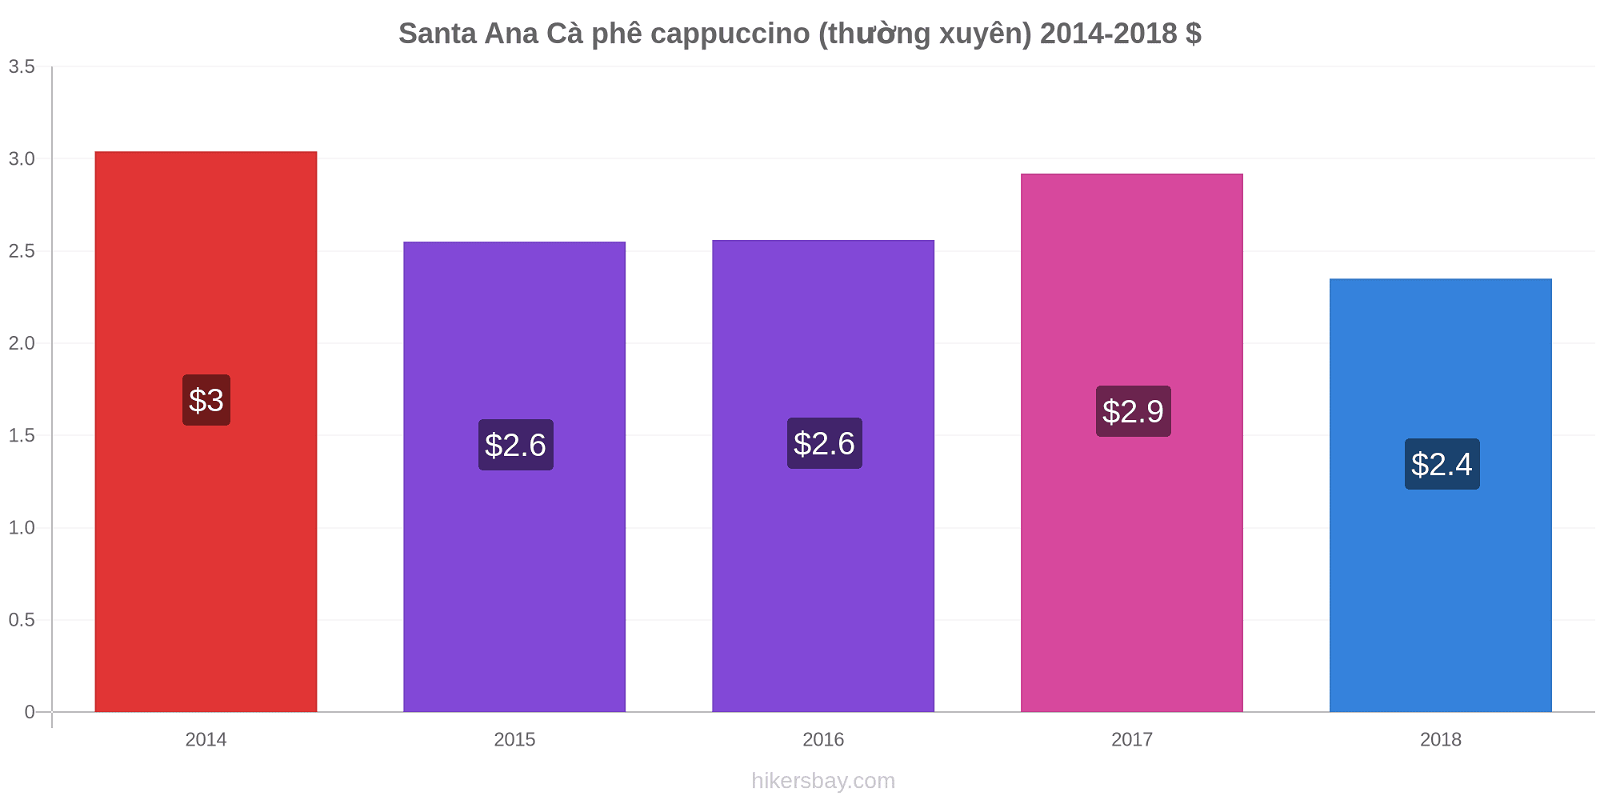 Santa Ana thay đổi giá Cà phê cappuccino (thường xuyên) hikersbay.com